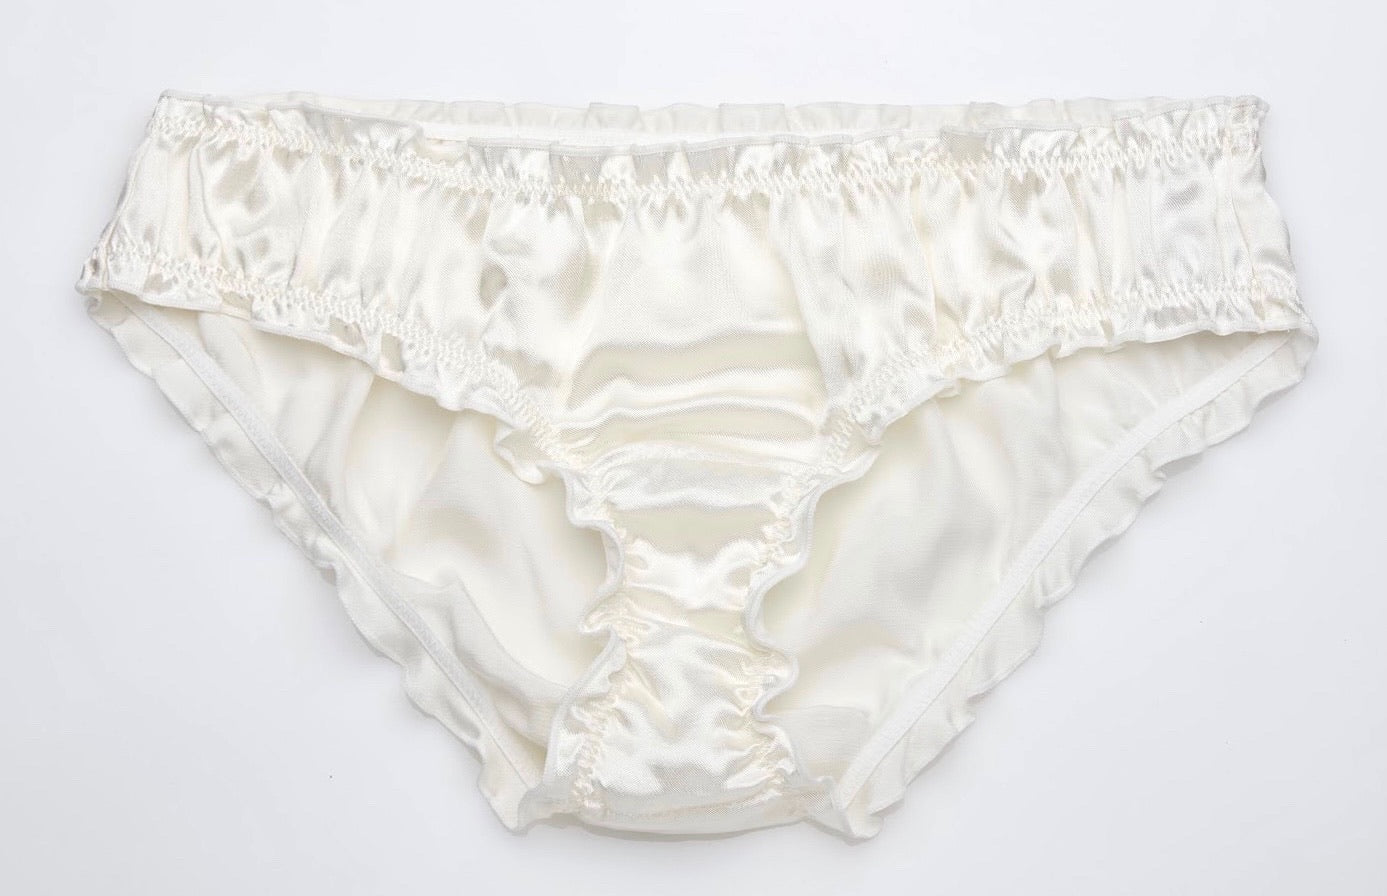 Silky Frilly Panties - Light Blush